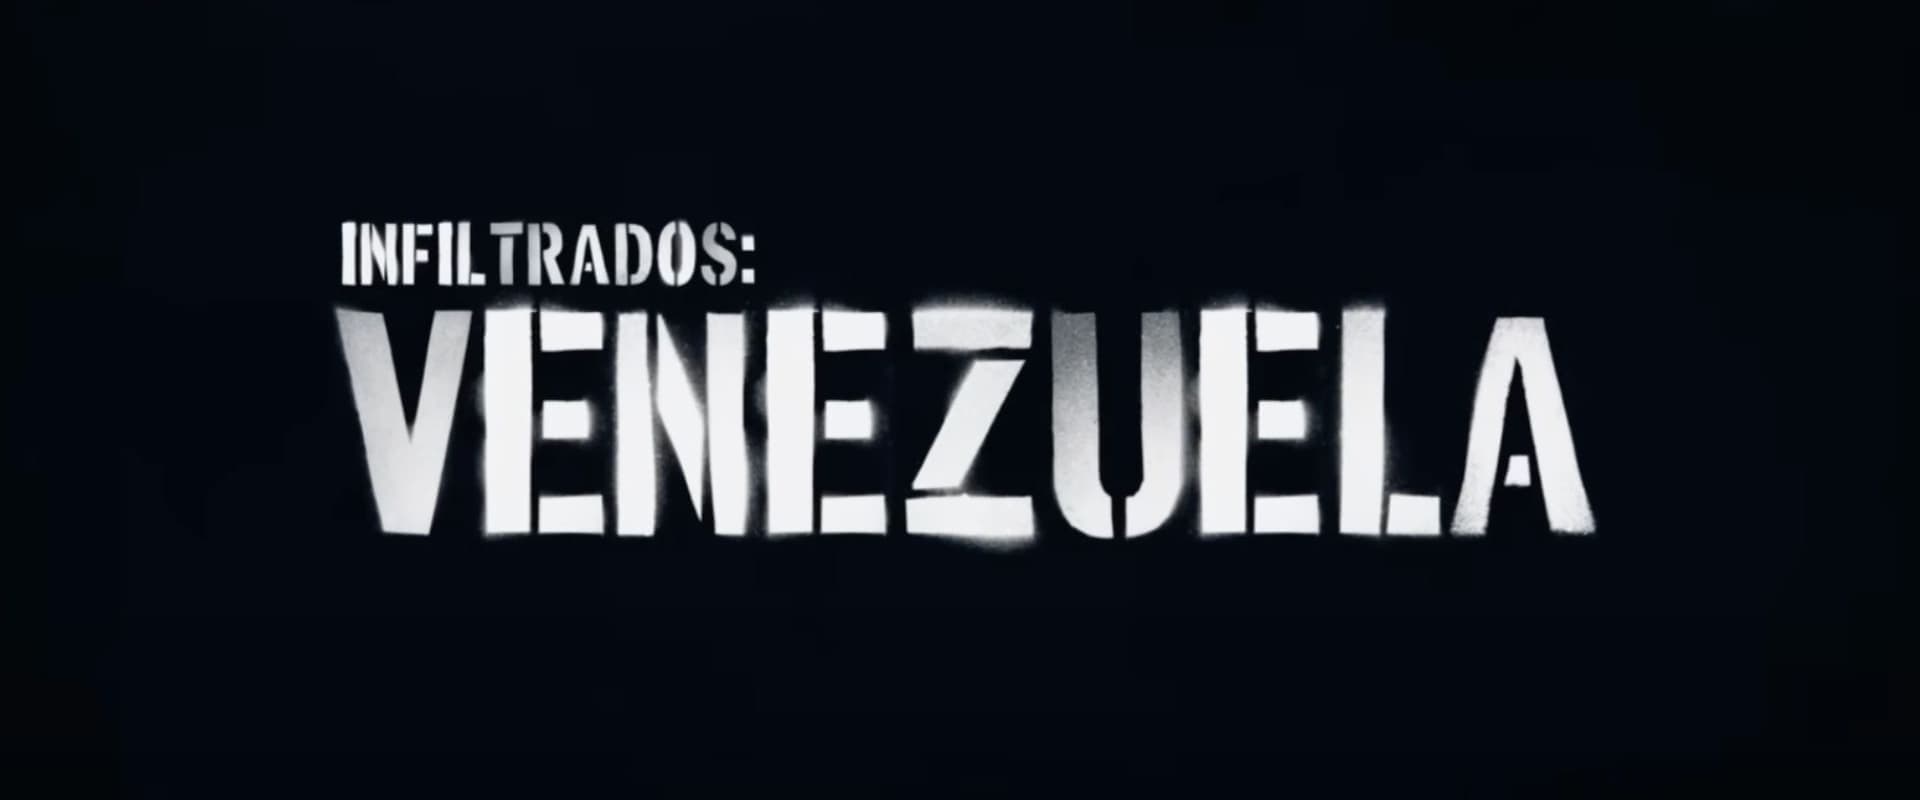 Infiltrados: Venezuela